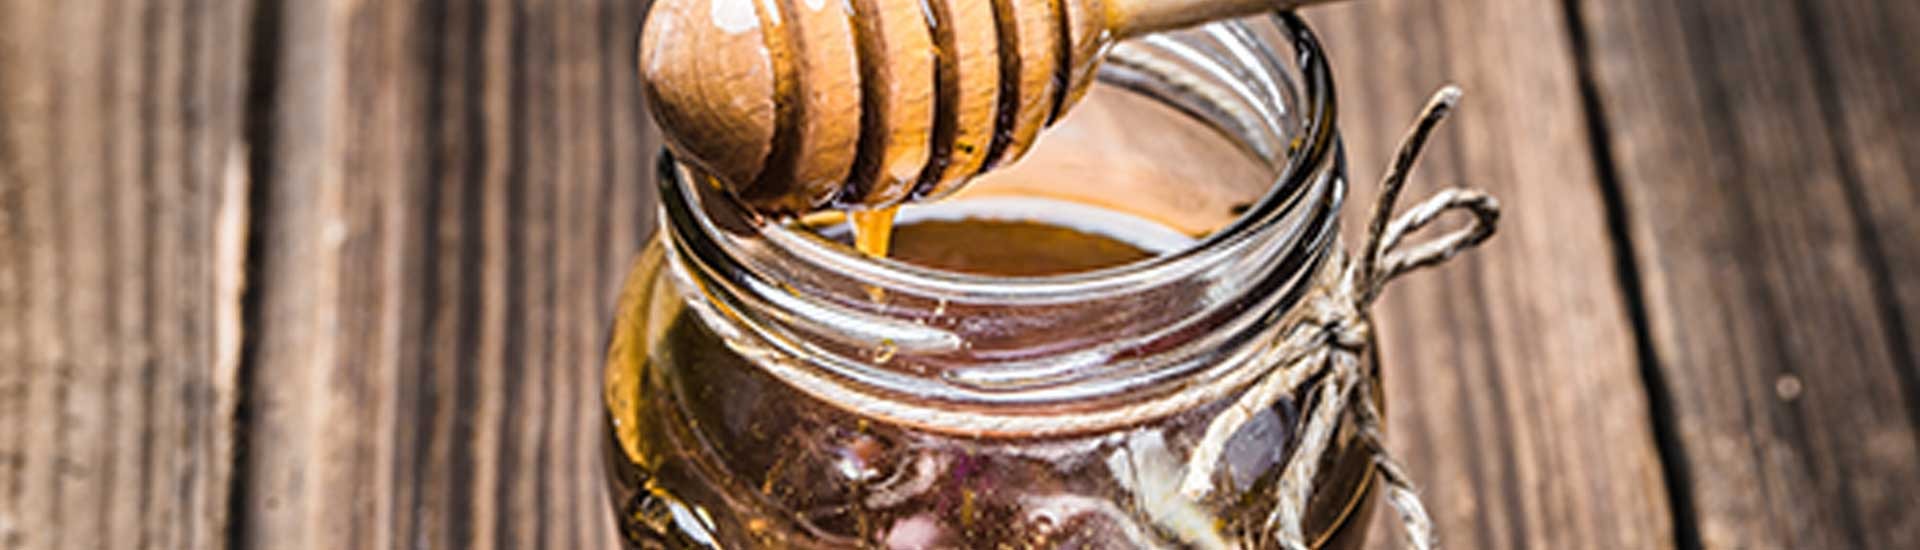 Proprietà del miele di melata